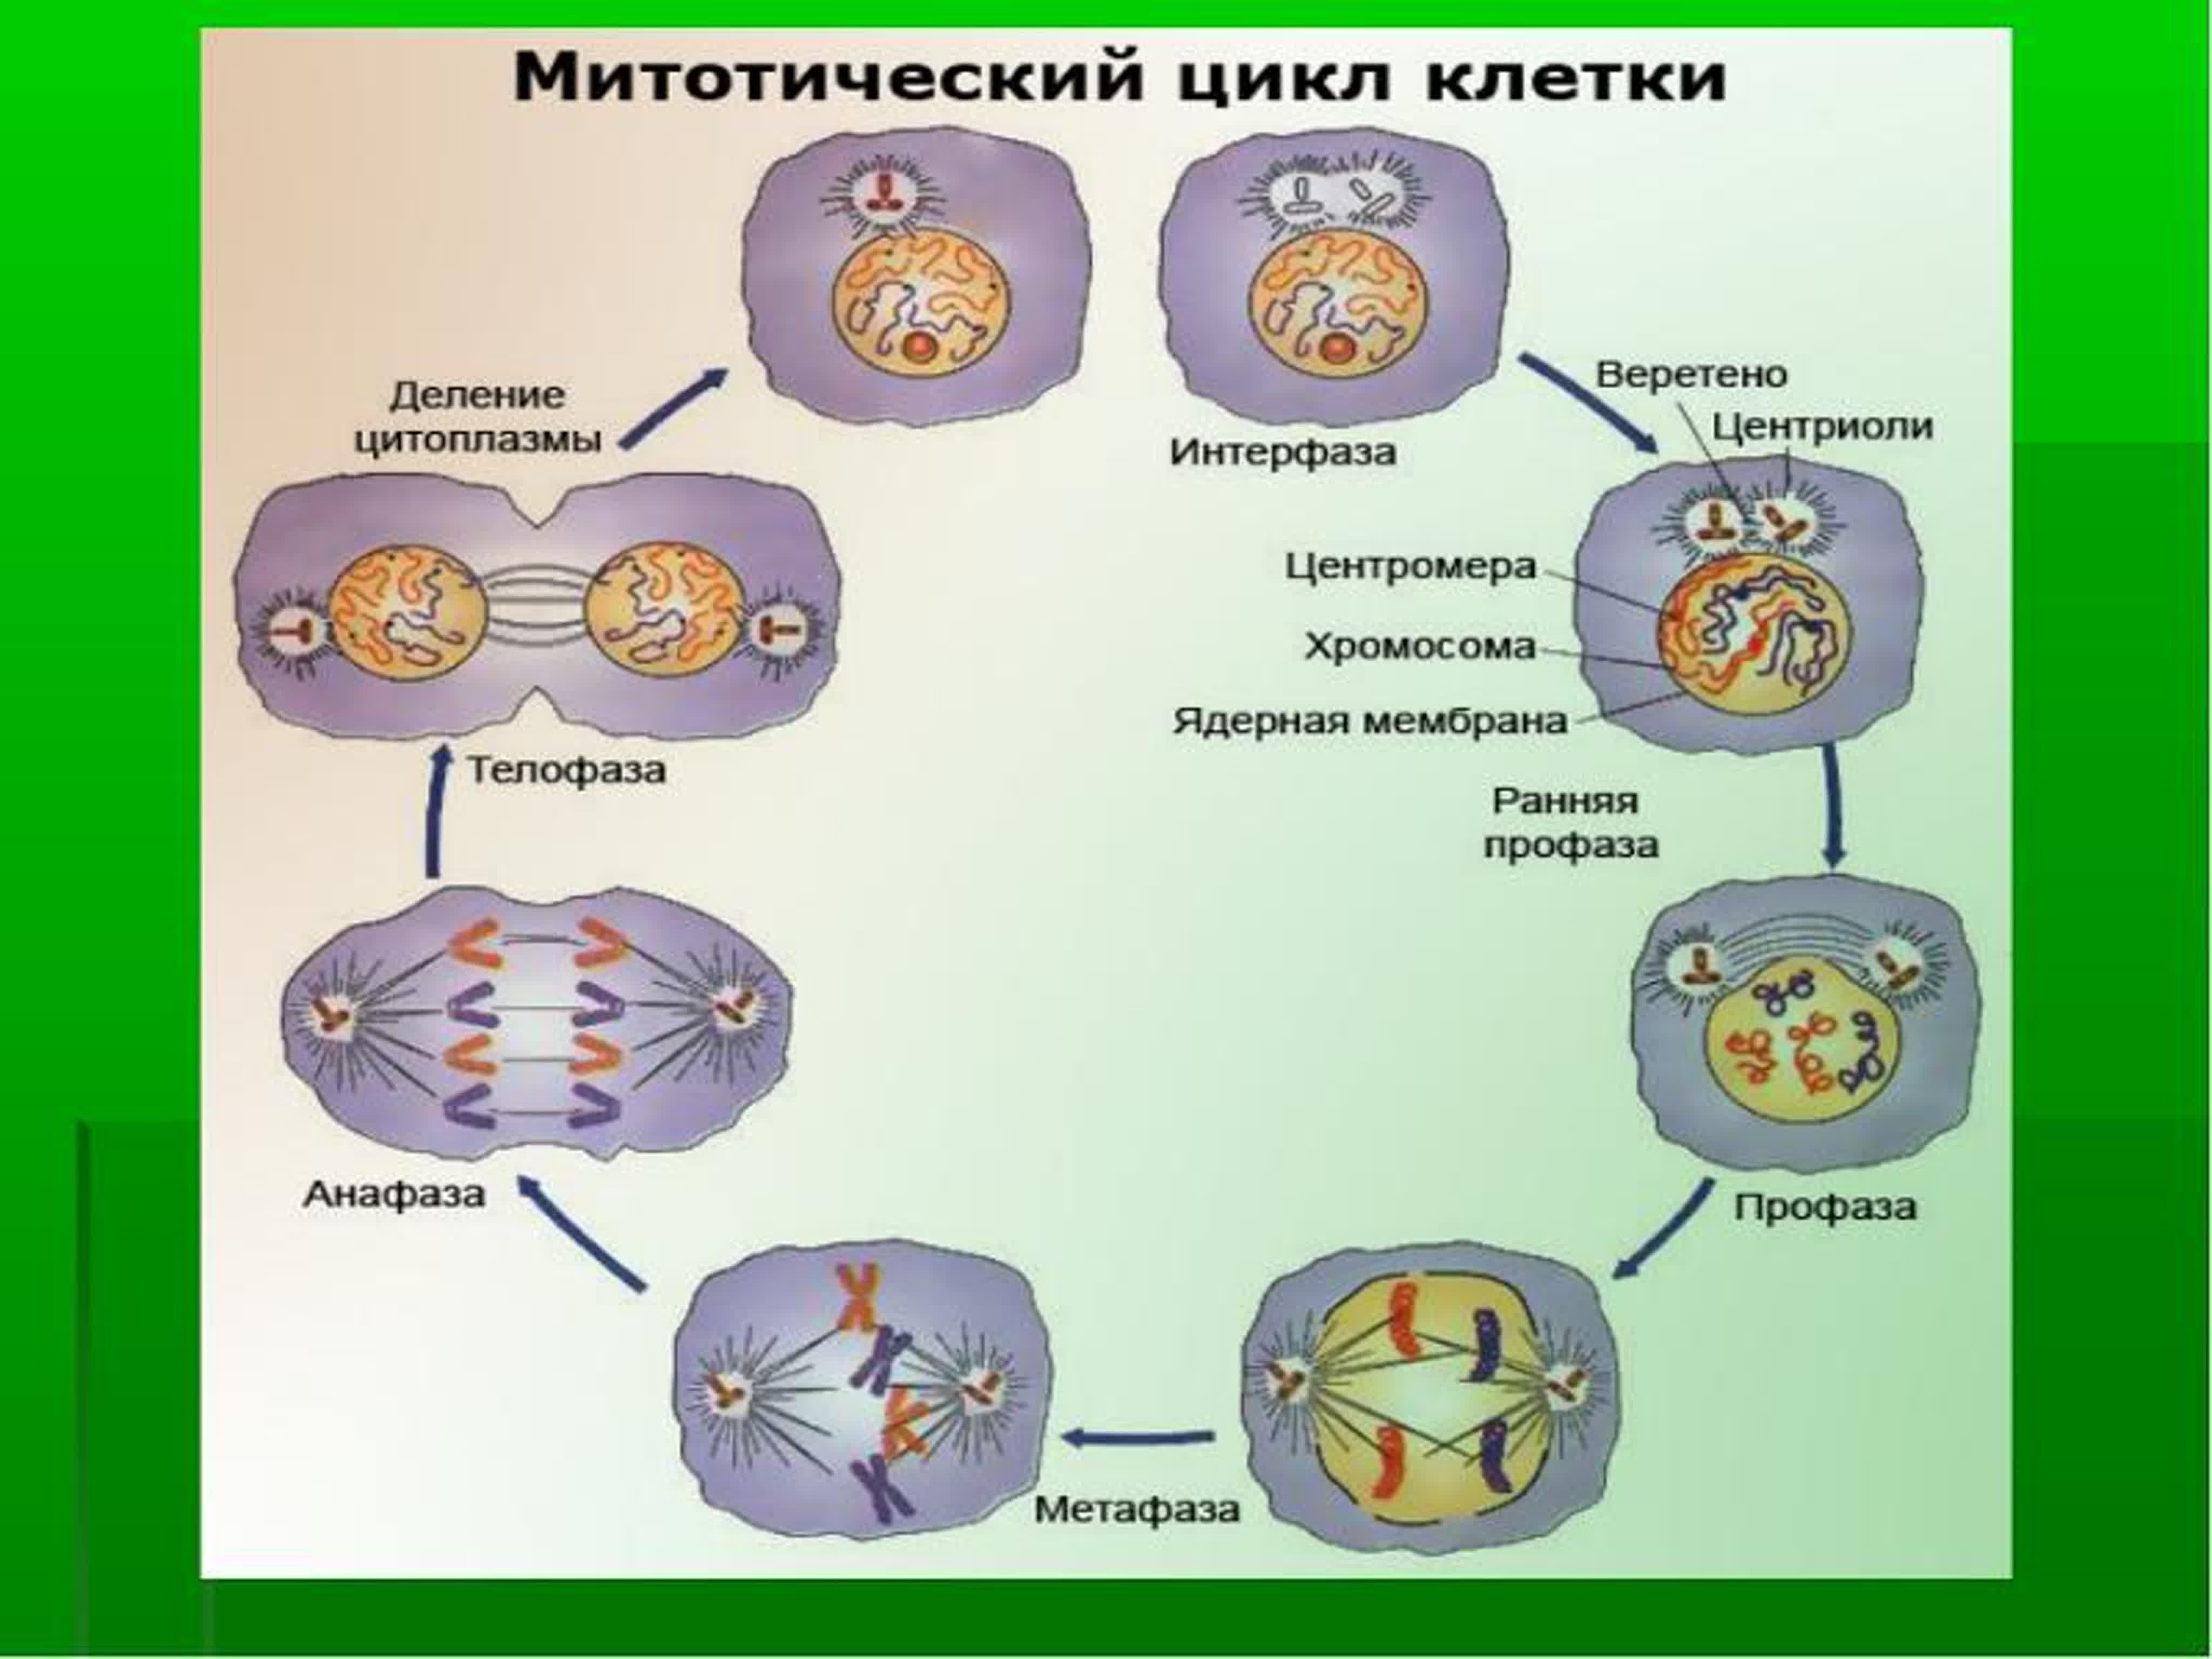 Жизнь клетки до ее деления. Схема стадий жизненного цикла клетки. Клеточный митотический цикл клетки. Жизненный цикл методический циал клеткм. Схема клеточного и митотического циклов.